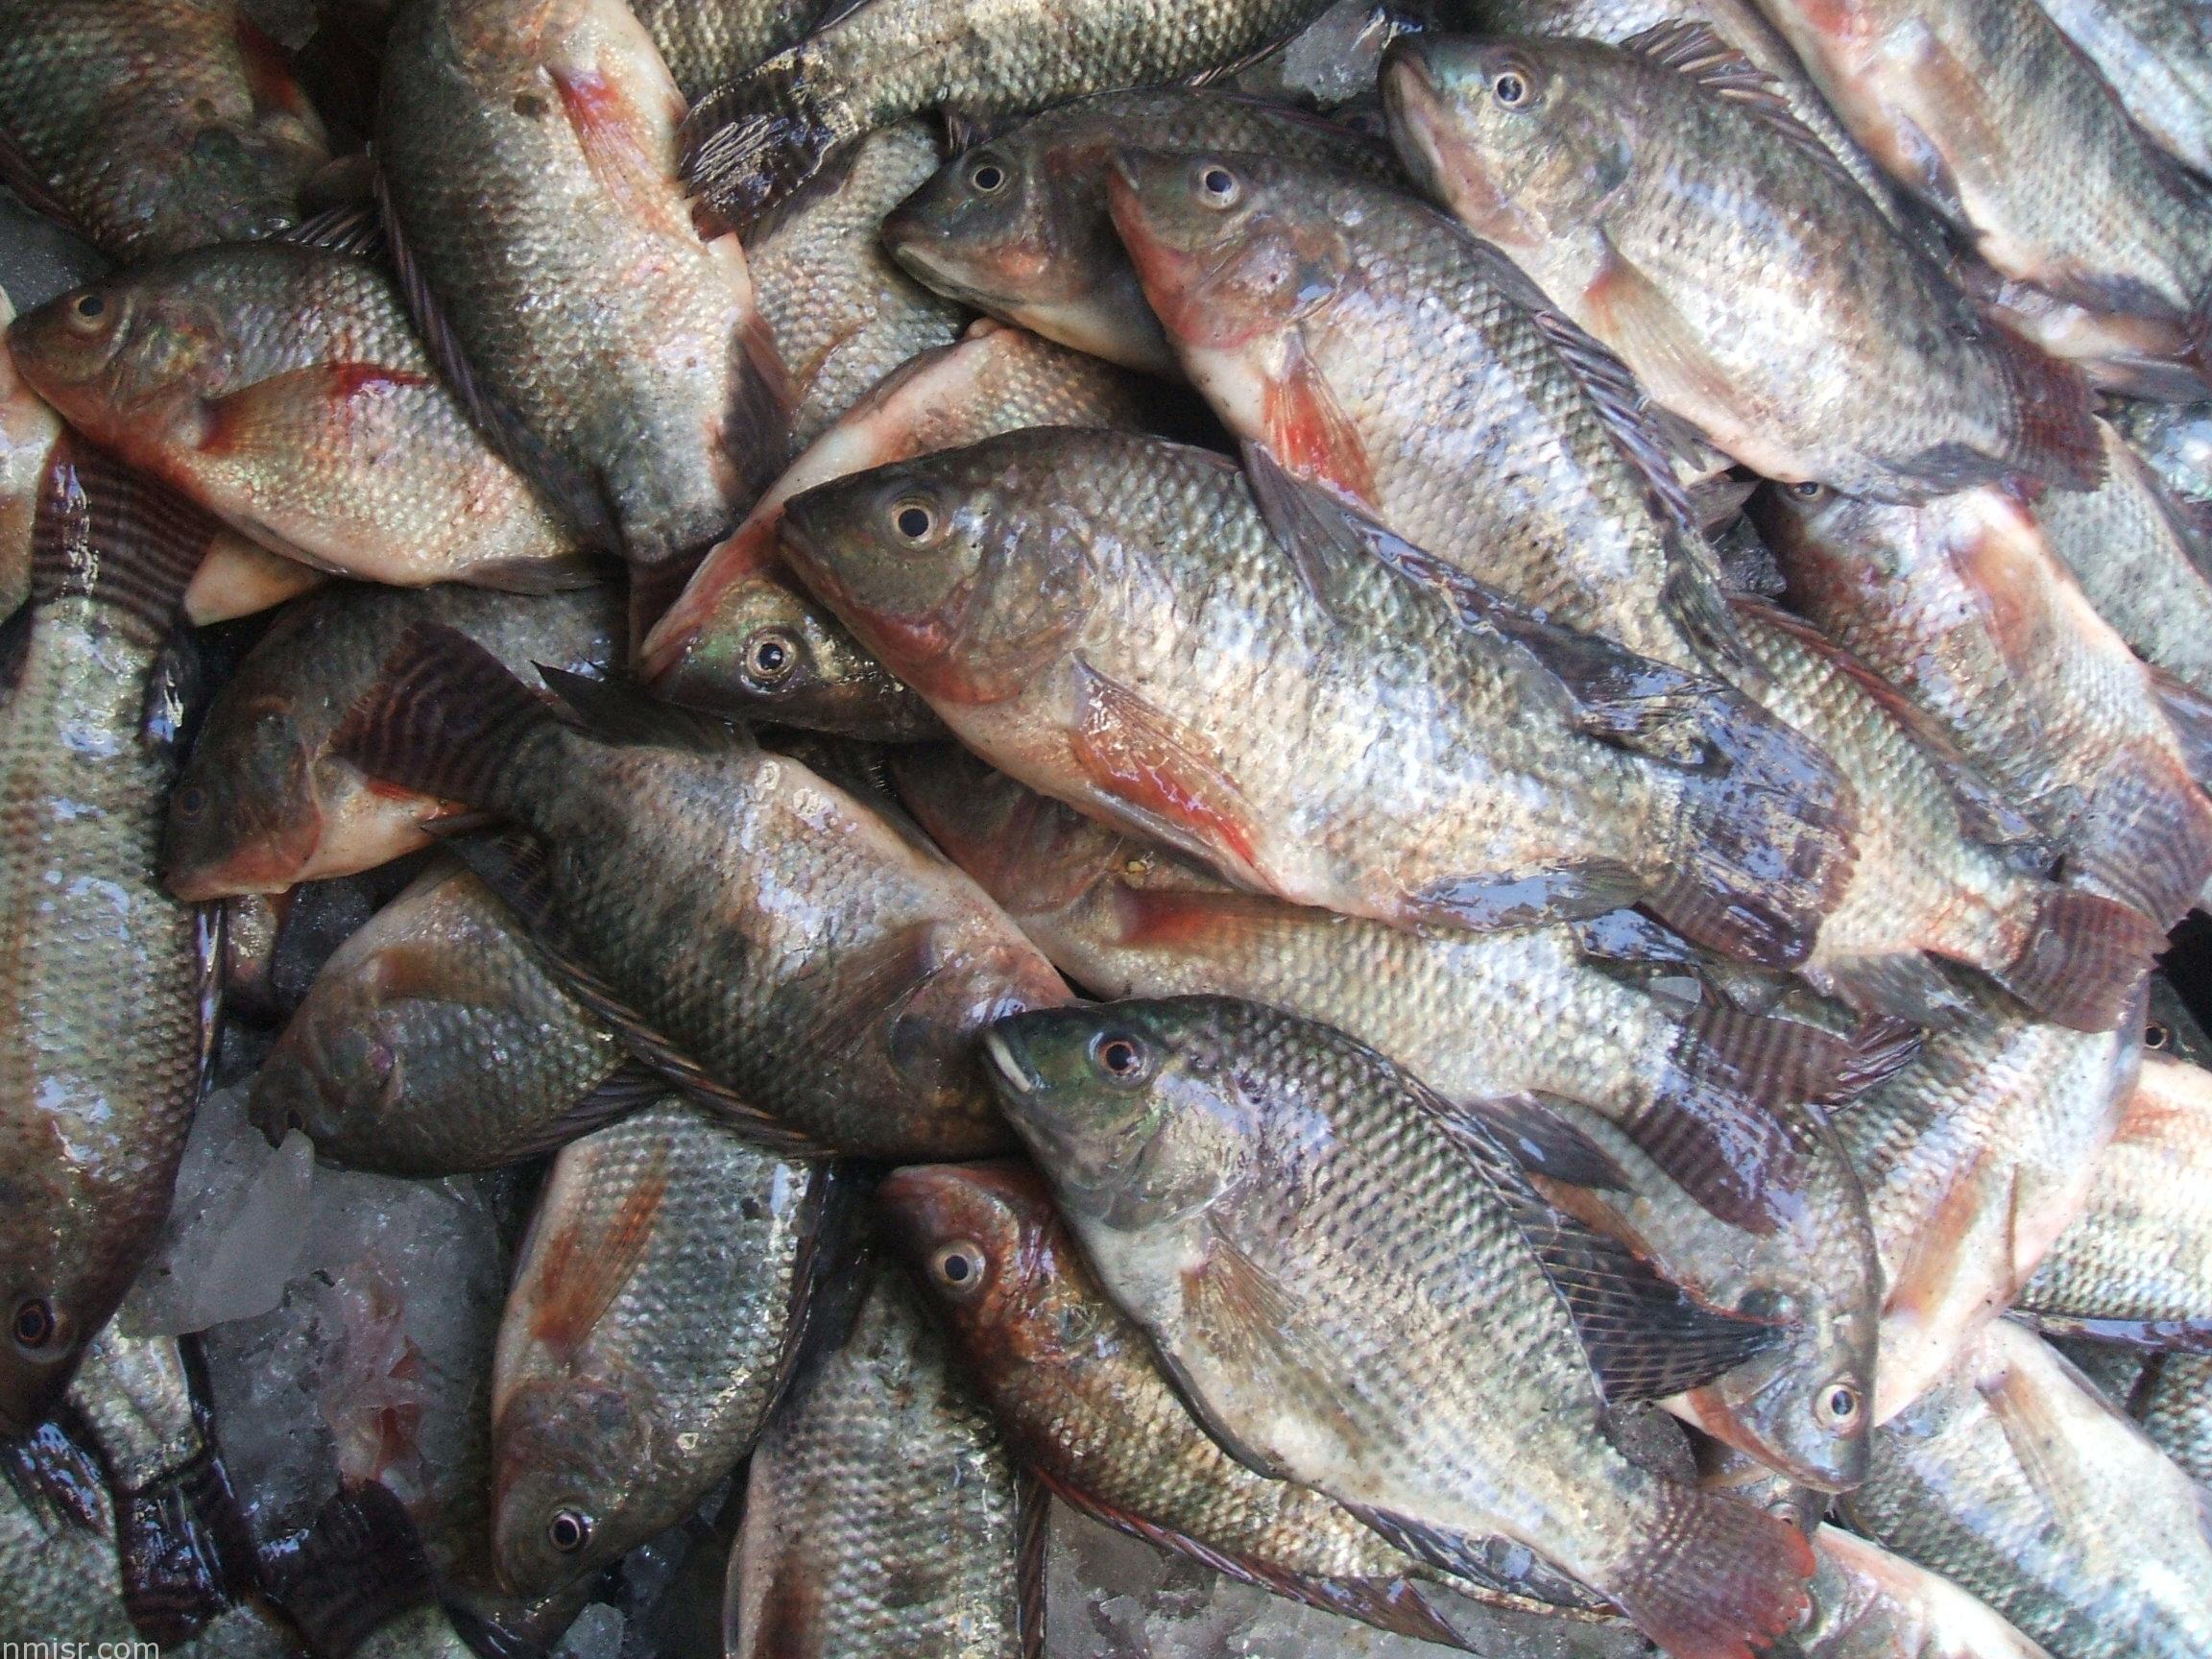 الحكومة تحذر المواطنين الأسماك بها سم قاتل قد تسبب الوفاة